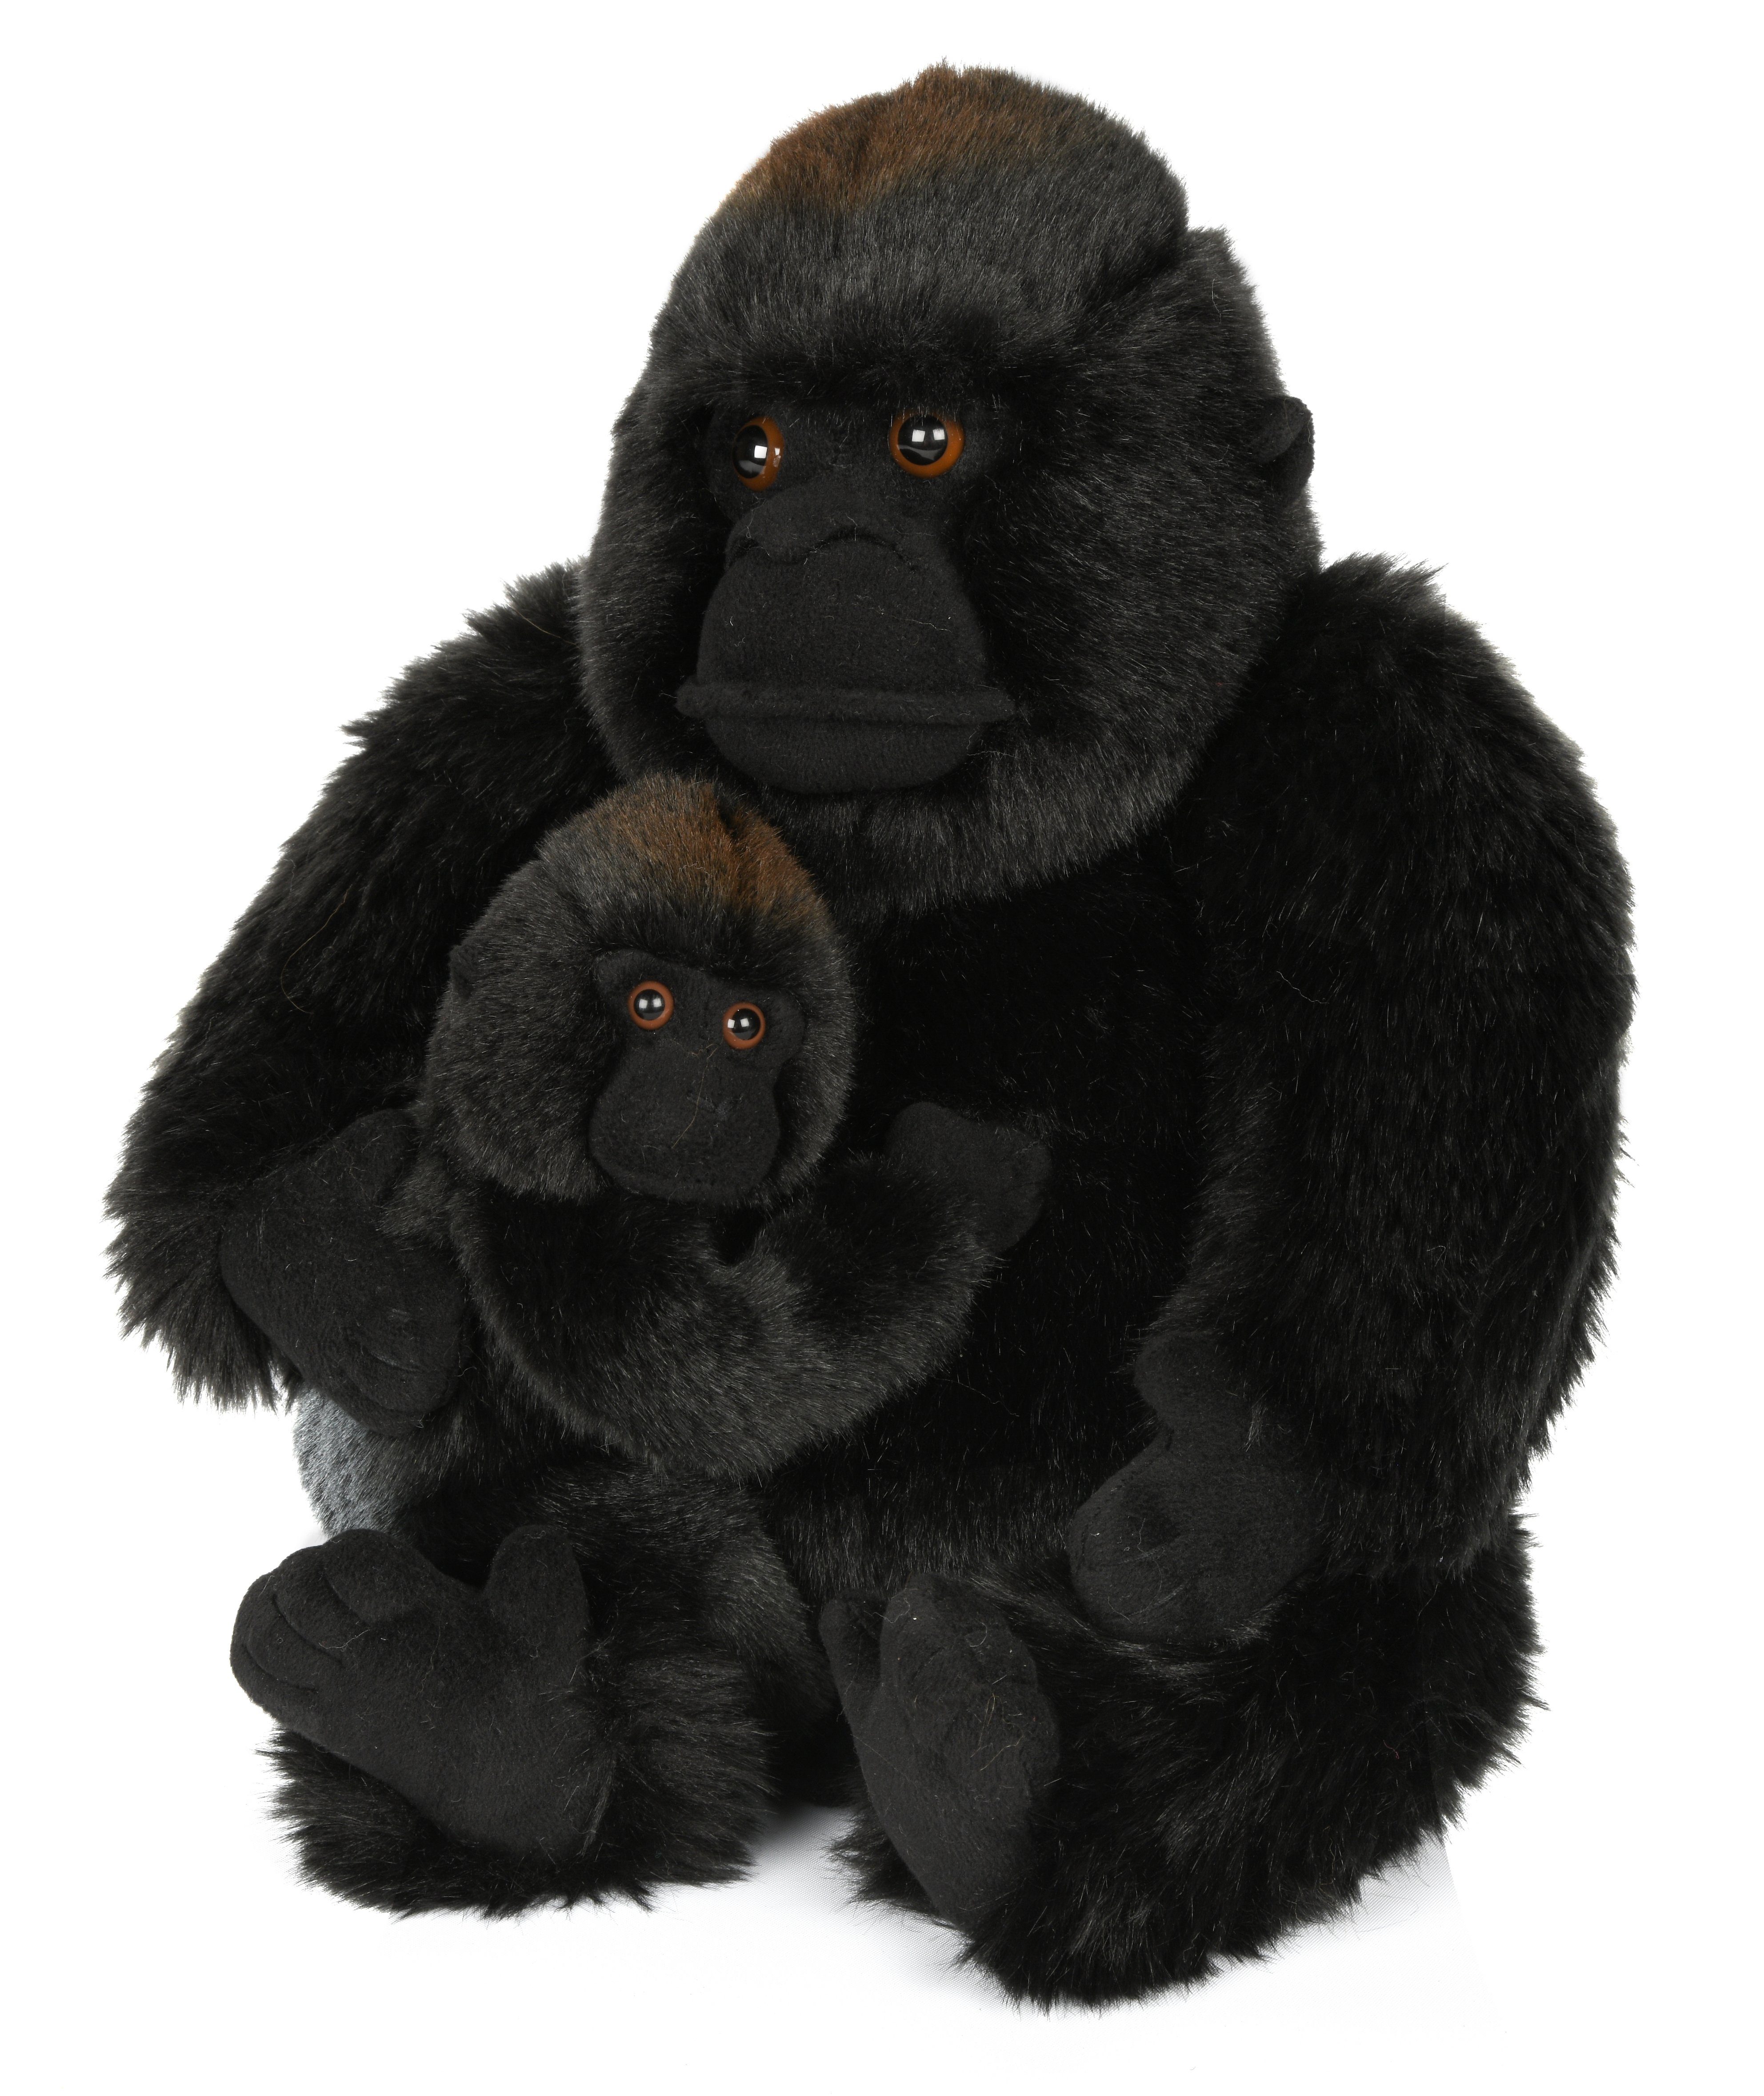 Uni Toys Affe Gorilla mit Baby groß Plüschtier Kuscheltier Stofftier 